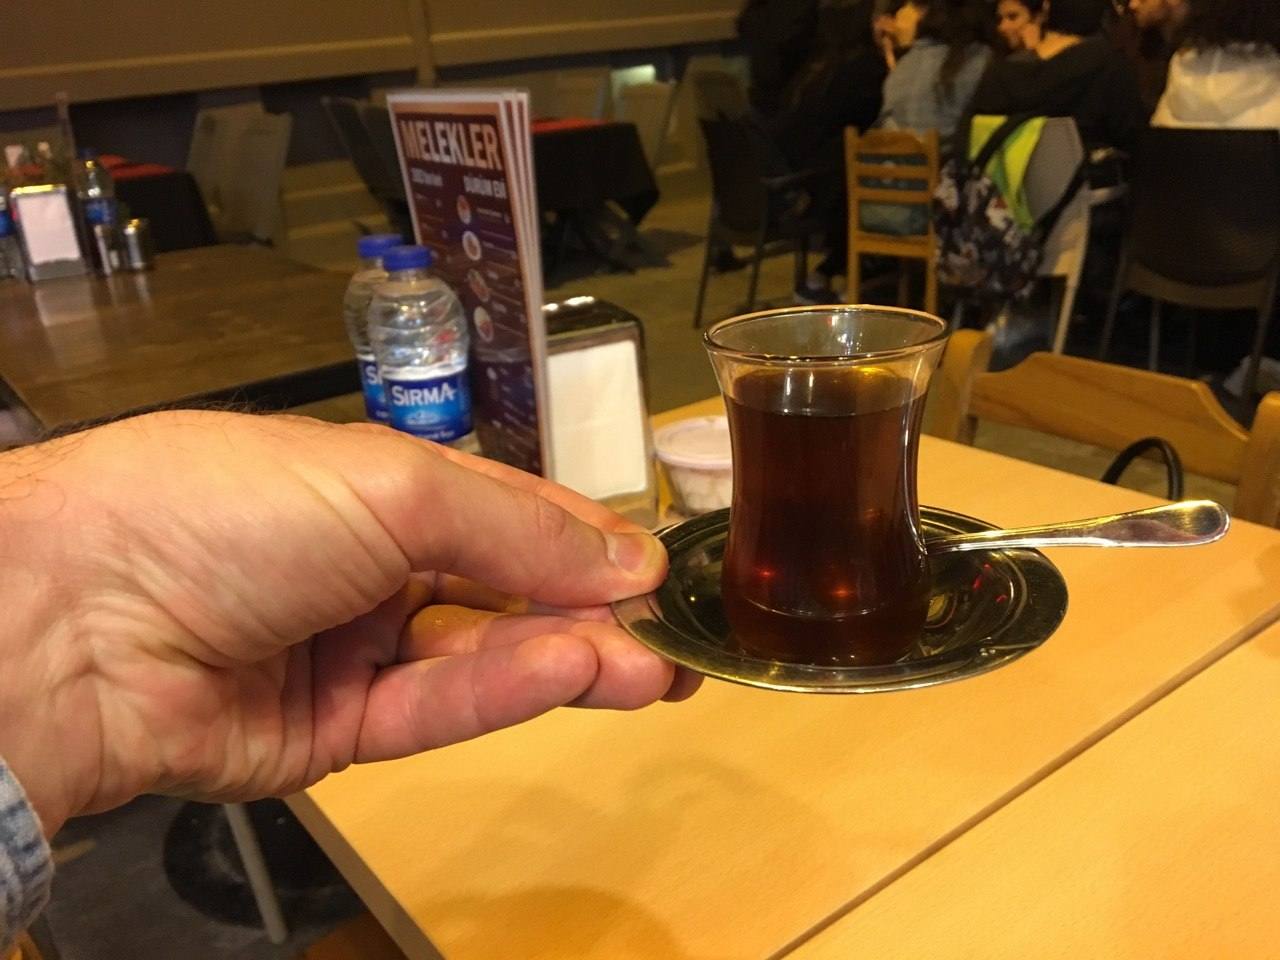 турецький чай